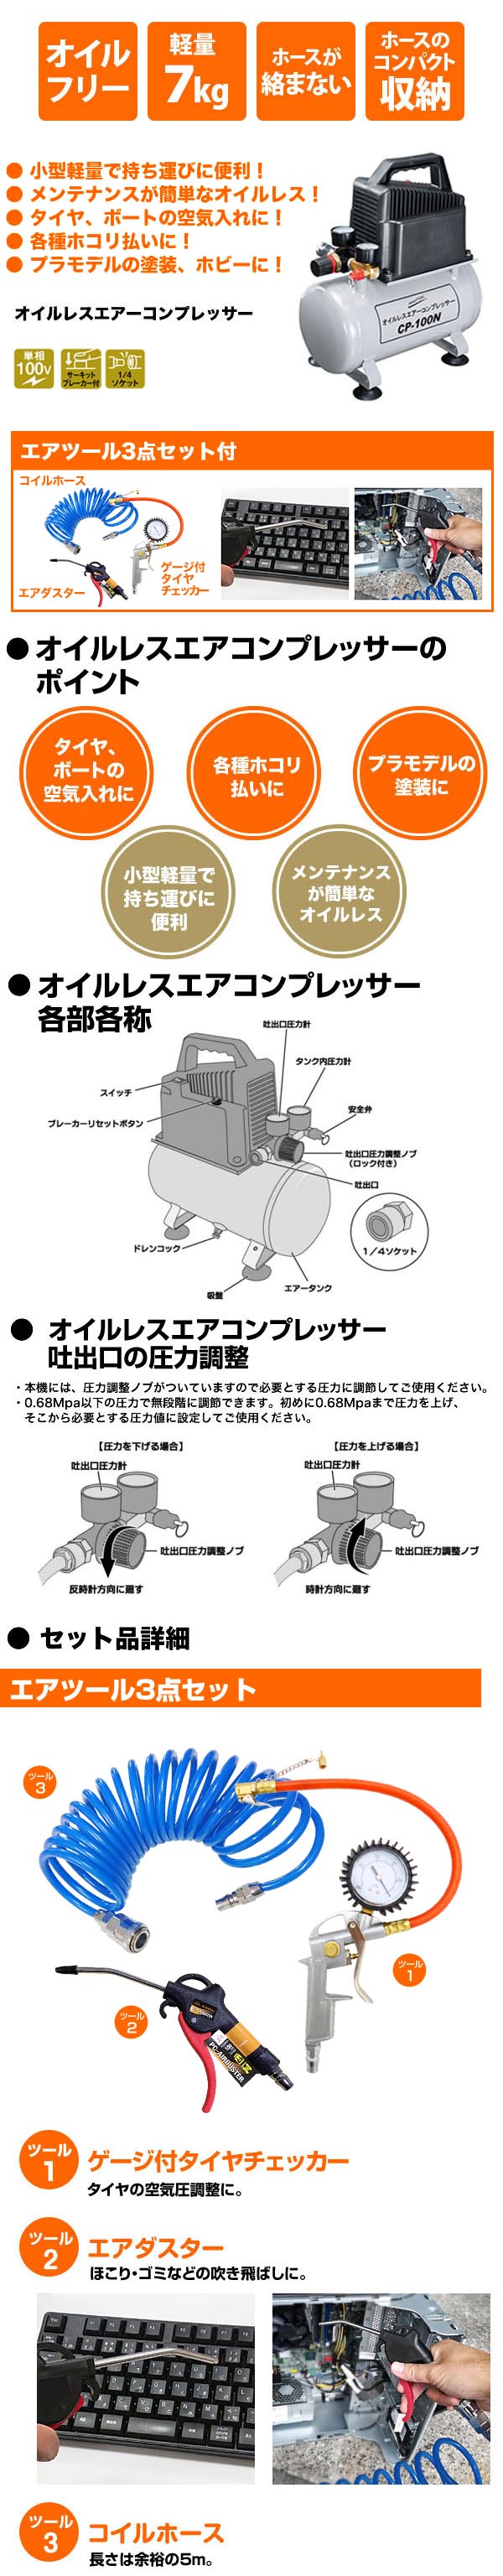 ナカトミ(NAKATOMI) オイルレスコンプレッサー CP-100N - 1